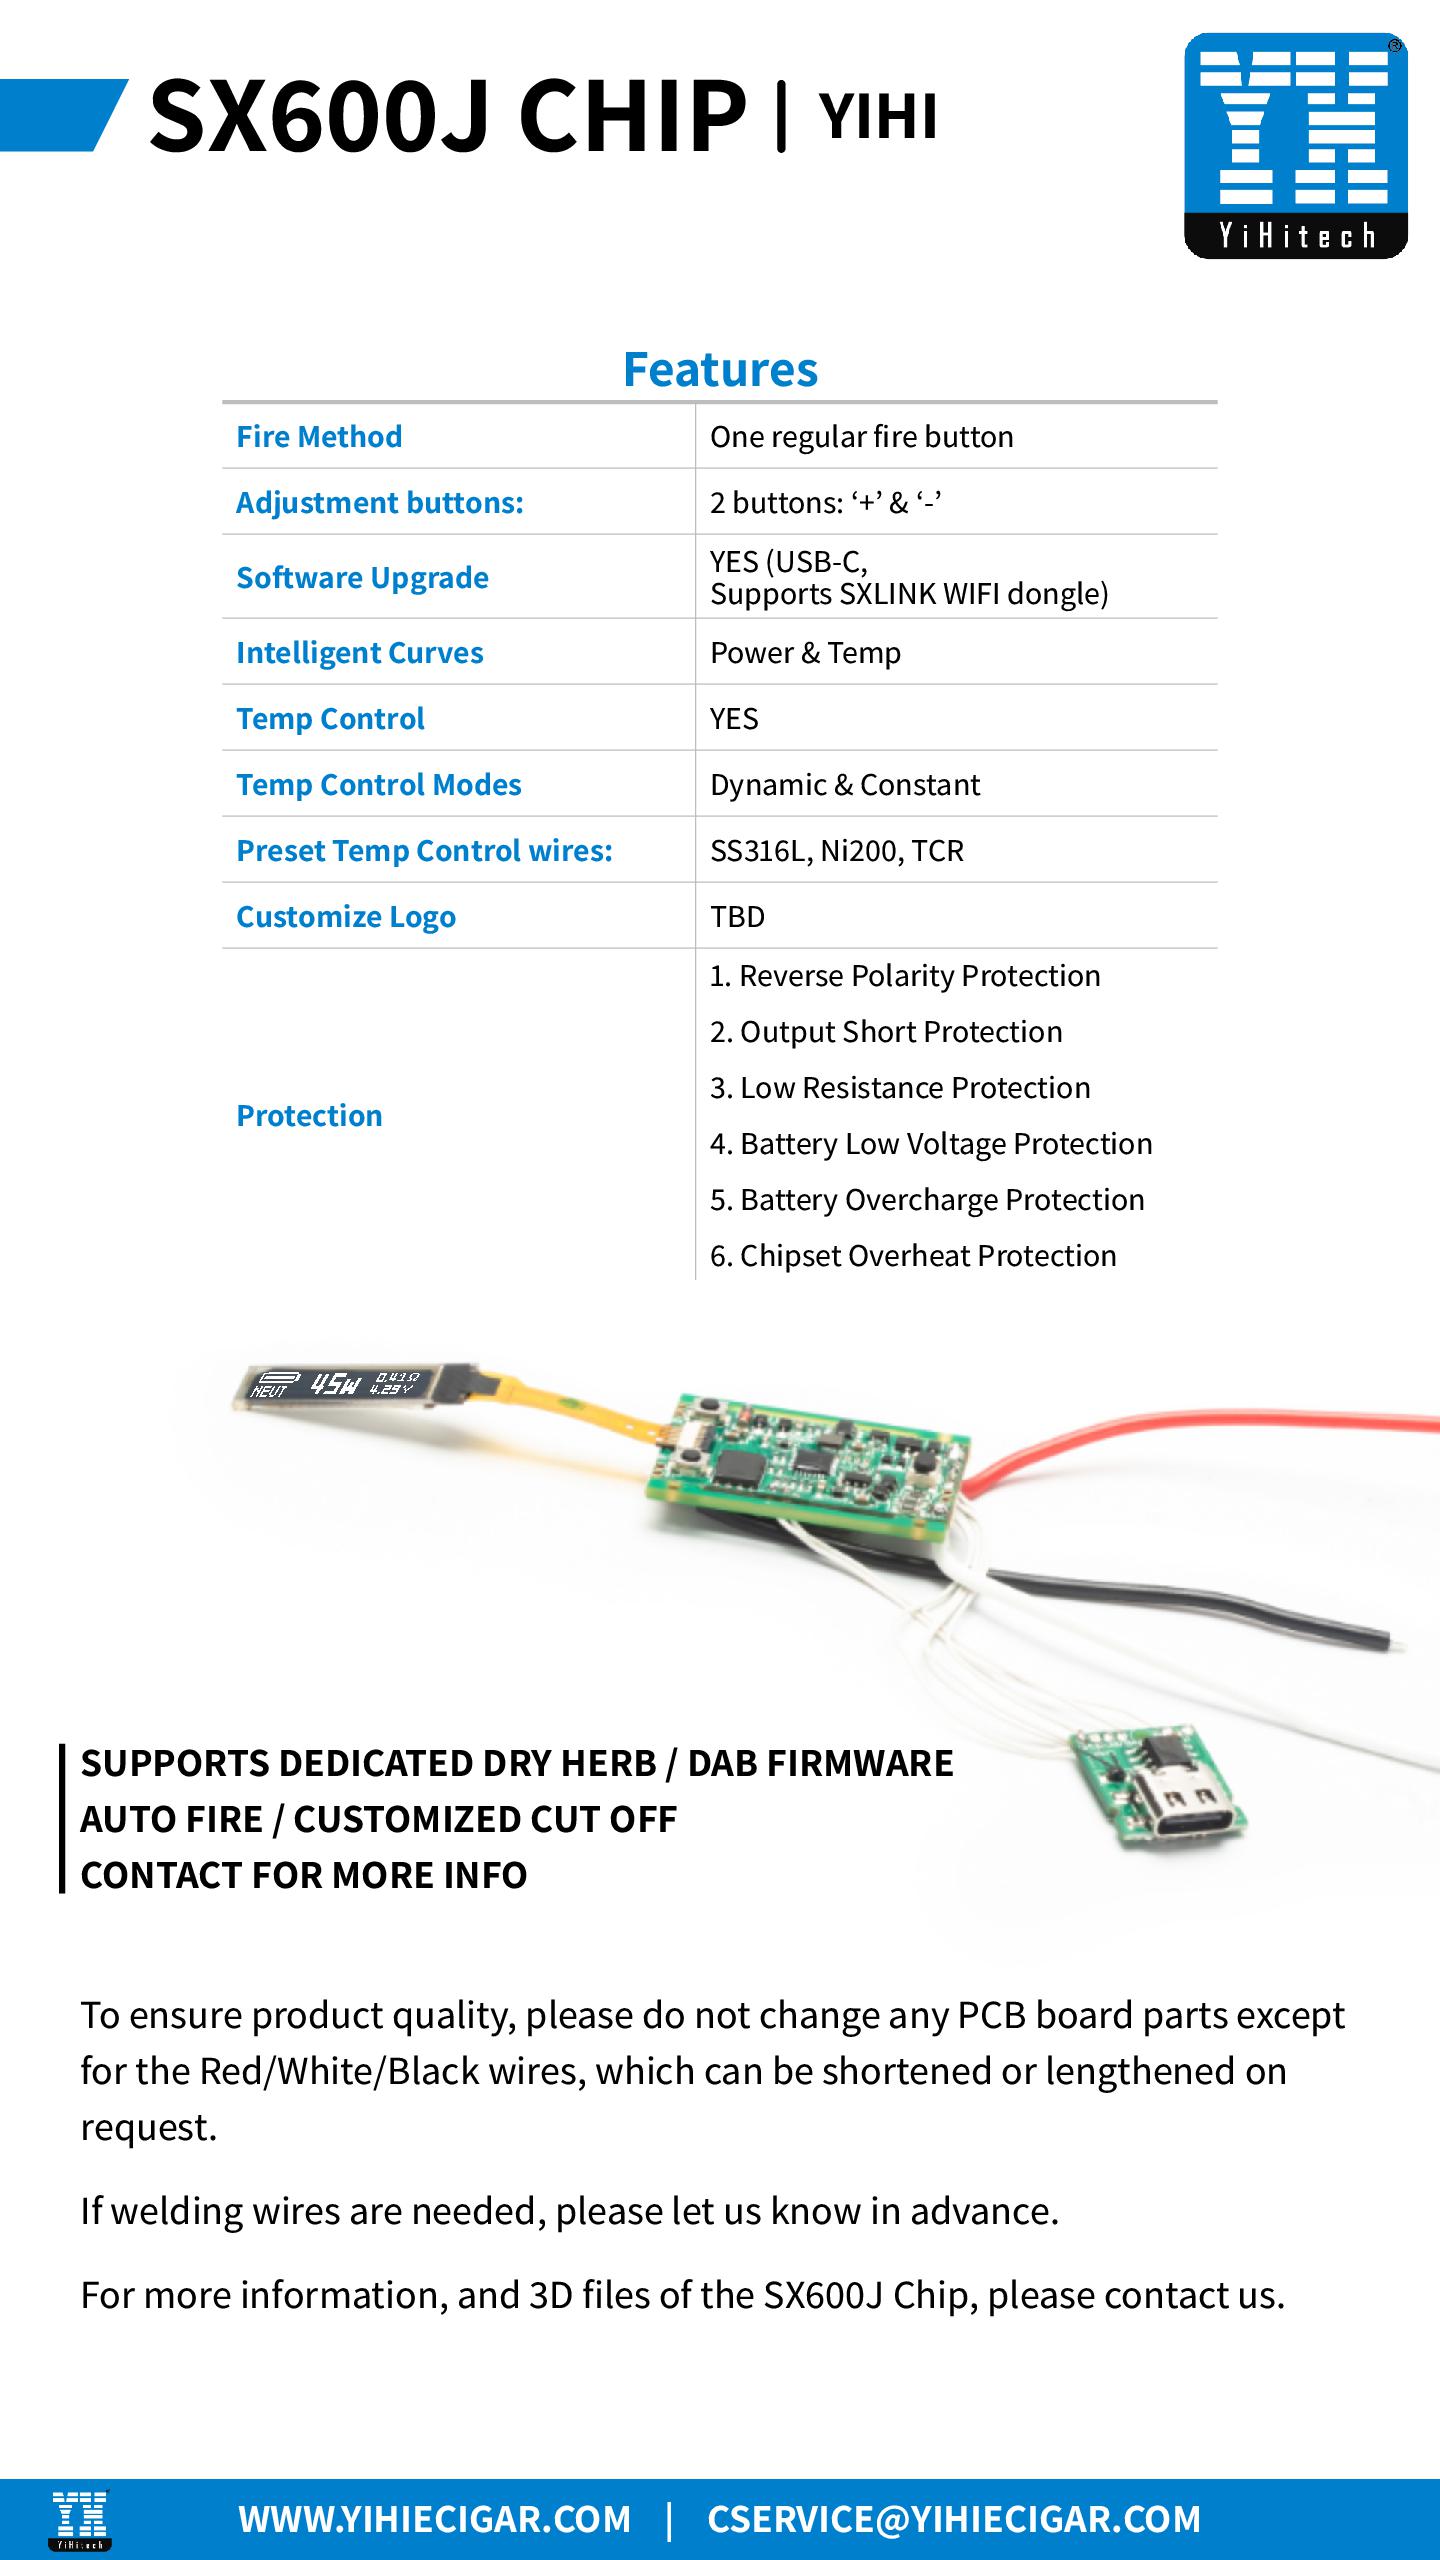 YIHI SX600J Chipset info v1.4 Specs-002.jpg